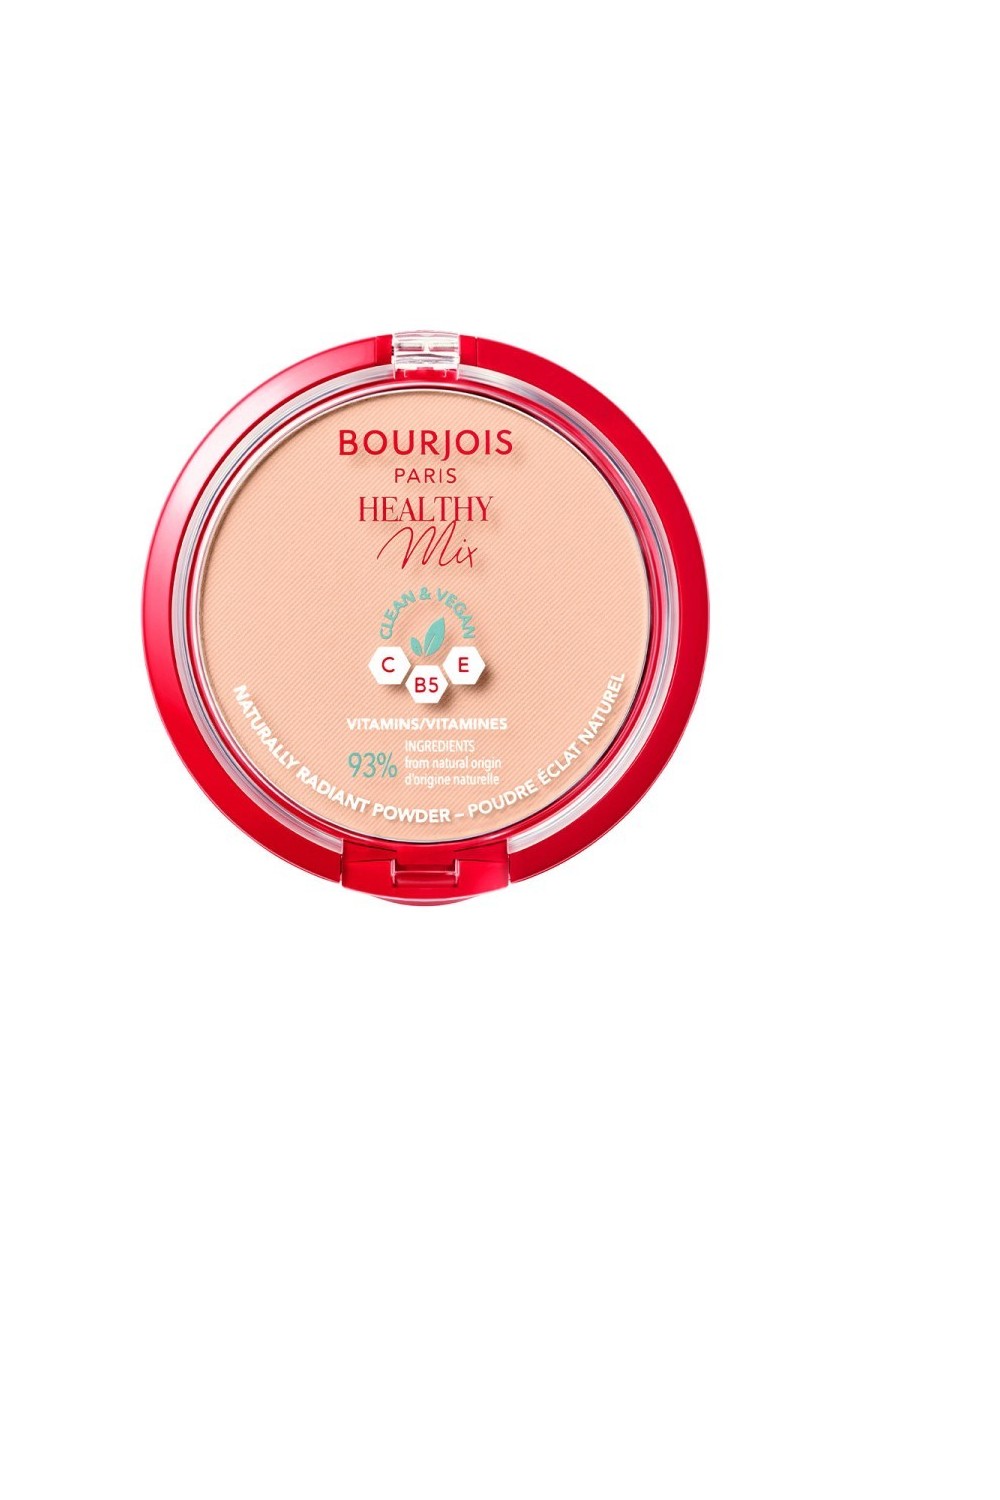 Bourjois Healthy Mix Poudre Naturel 03-Rose Beige 10g